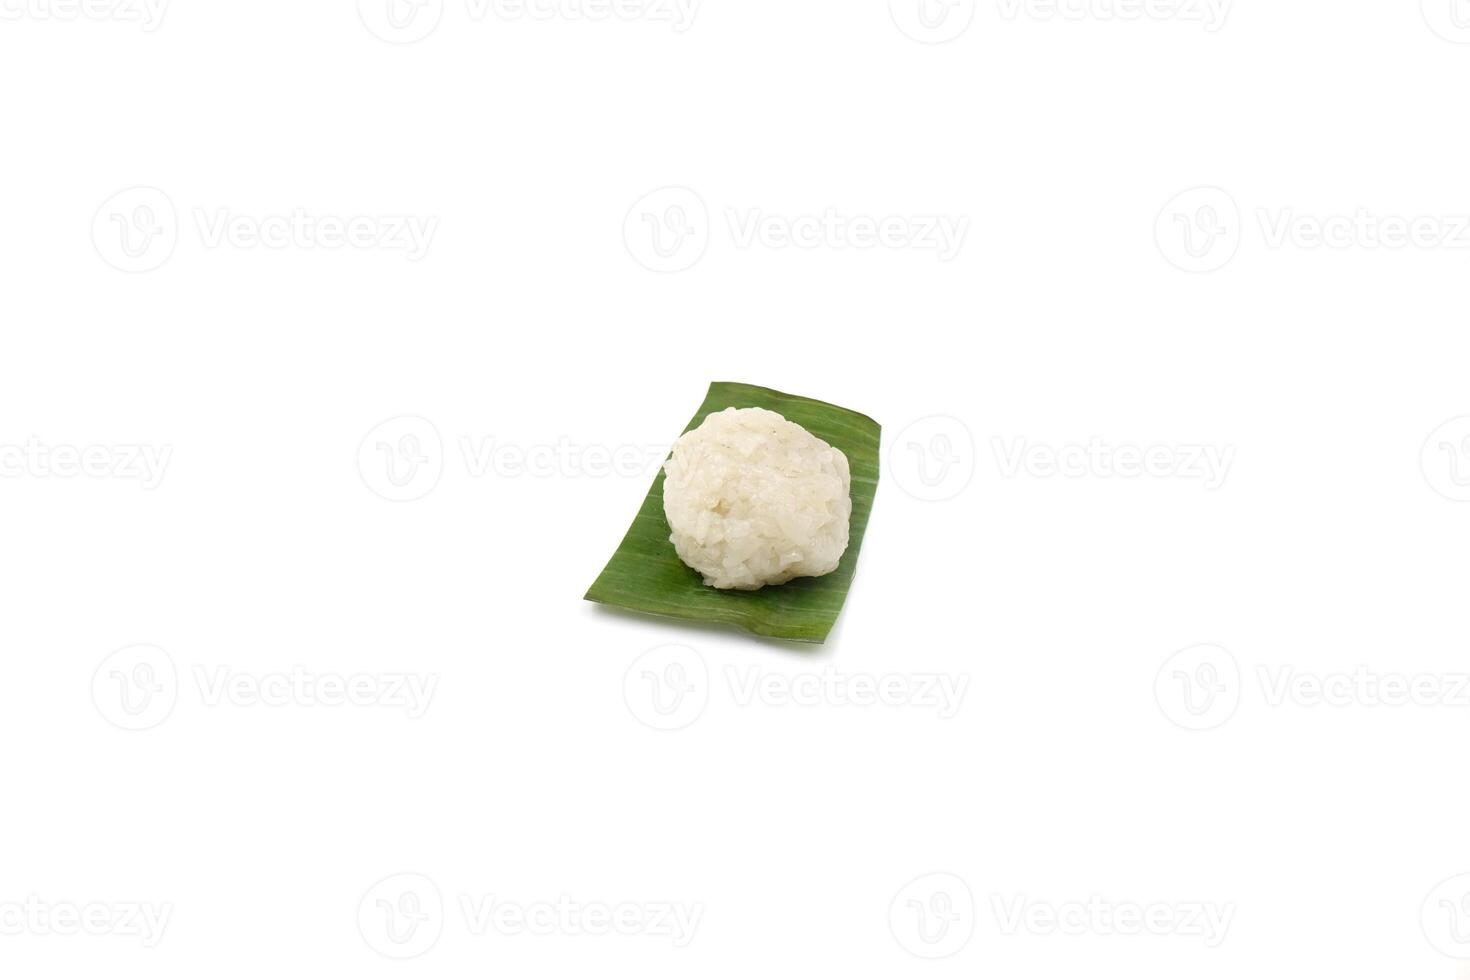 Le tape ketan est un aliment traditionnel d'Indonésie. fabriqué à partir de riz gluant transformé et enveloppé dans des feuilles de bananier. photo